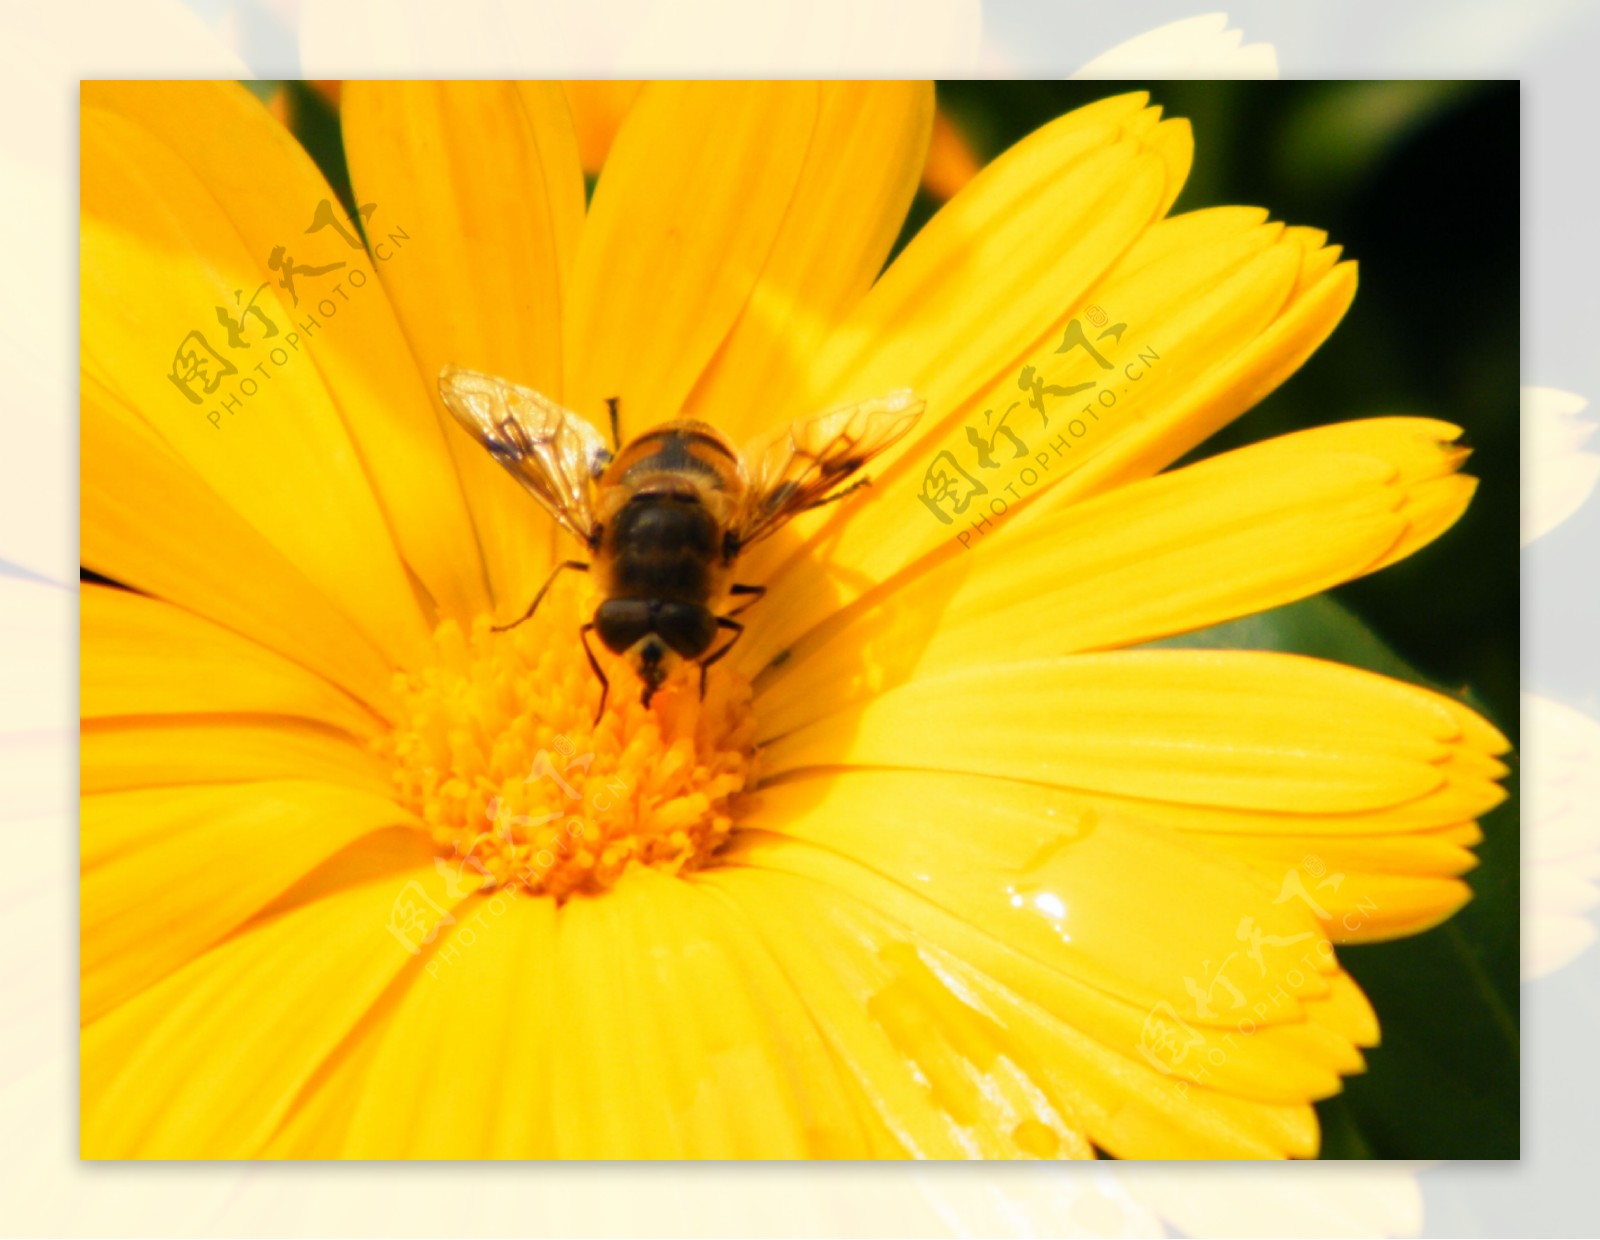 微距蜜蜂图片